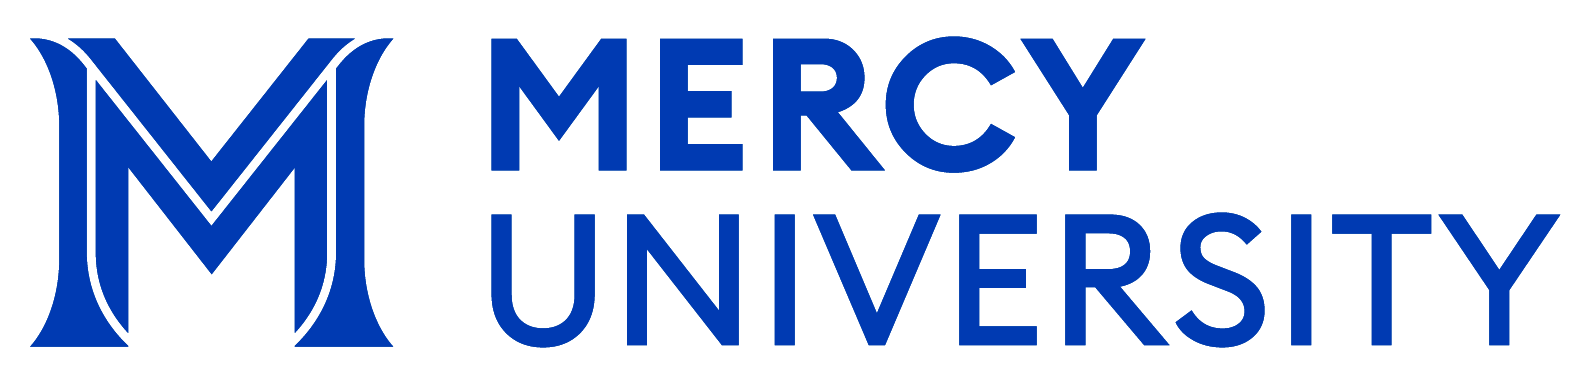 Mercy University Logo